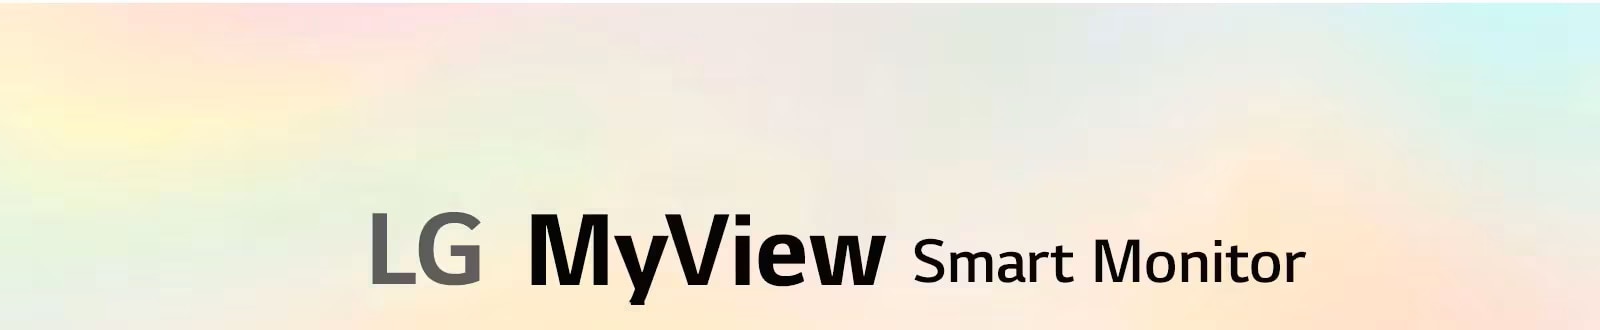 LG MyView Smart Monitor - Entretenimiento y teletrabajo en 1 único monitor 	